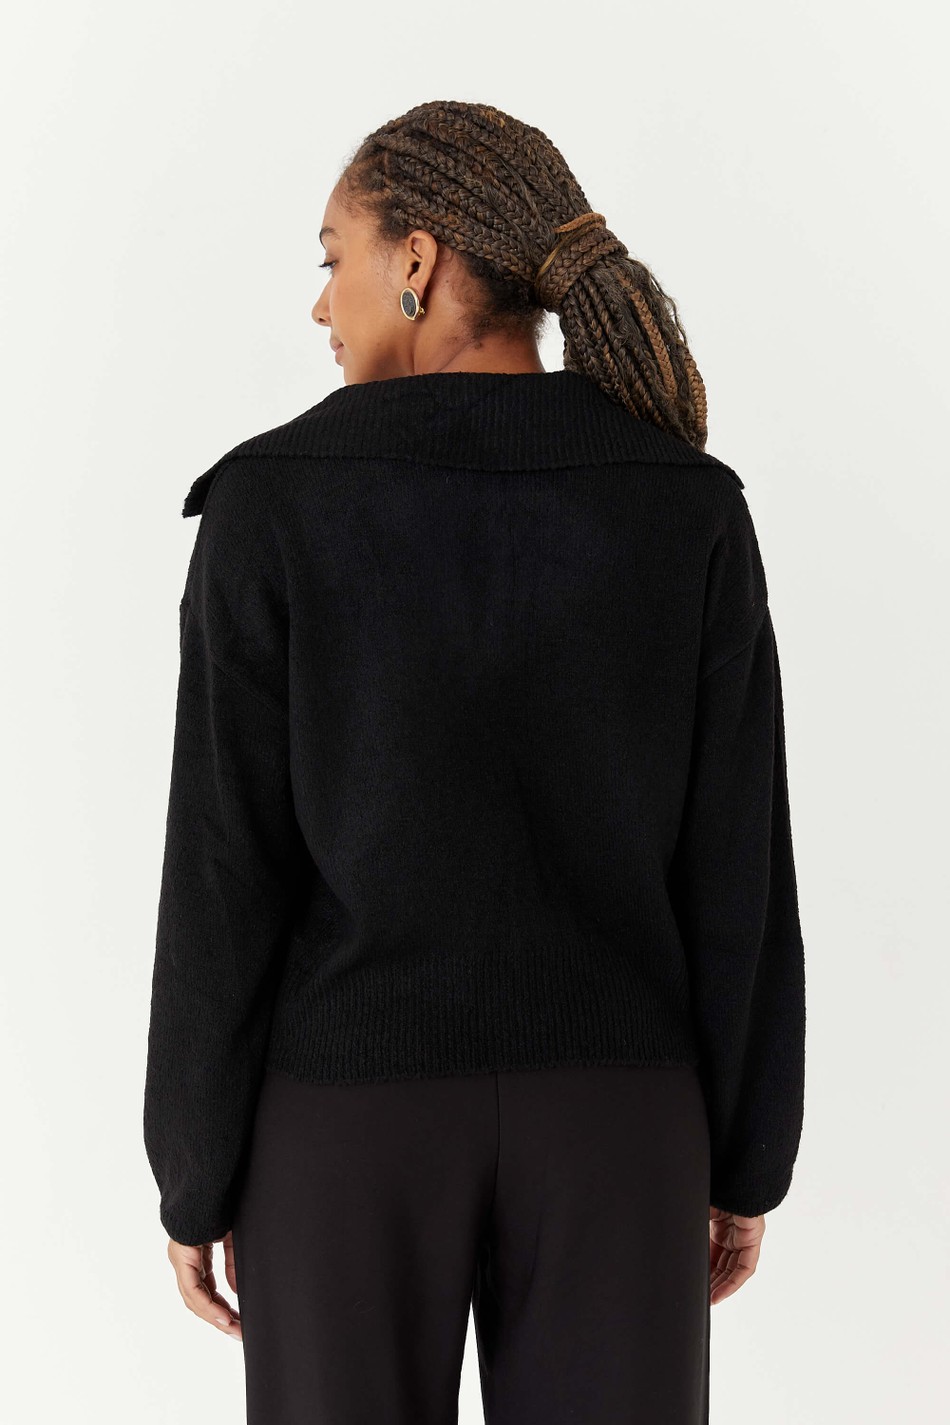 PRÉ VENDA | suéter tricot com golinha vintage morena